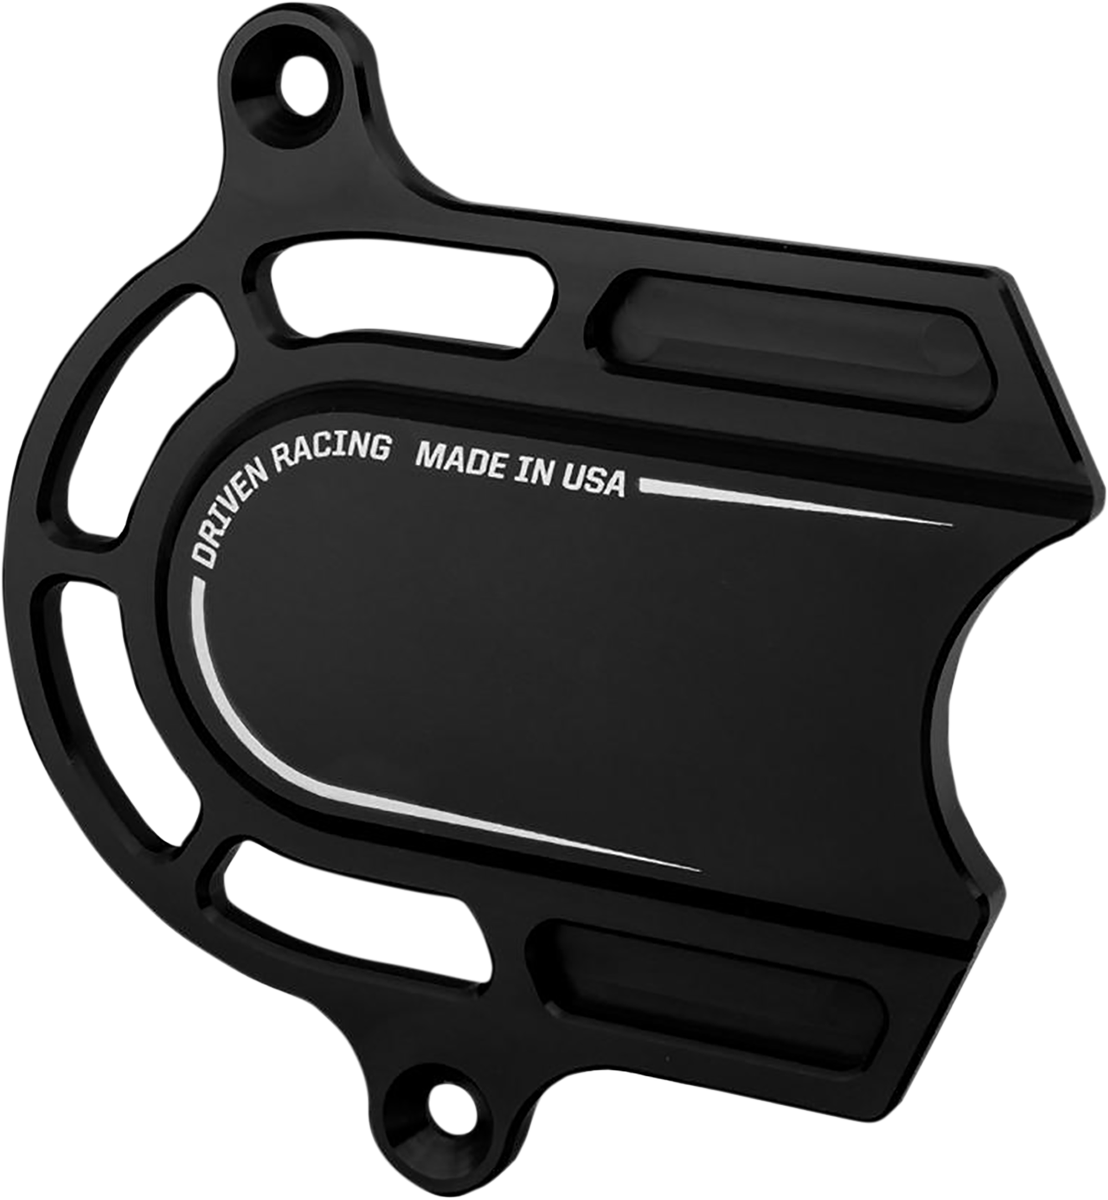 DRIVEN RACING Sprocket Cover - Black DEC-004-BK